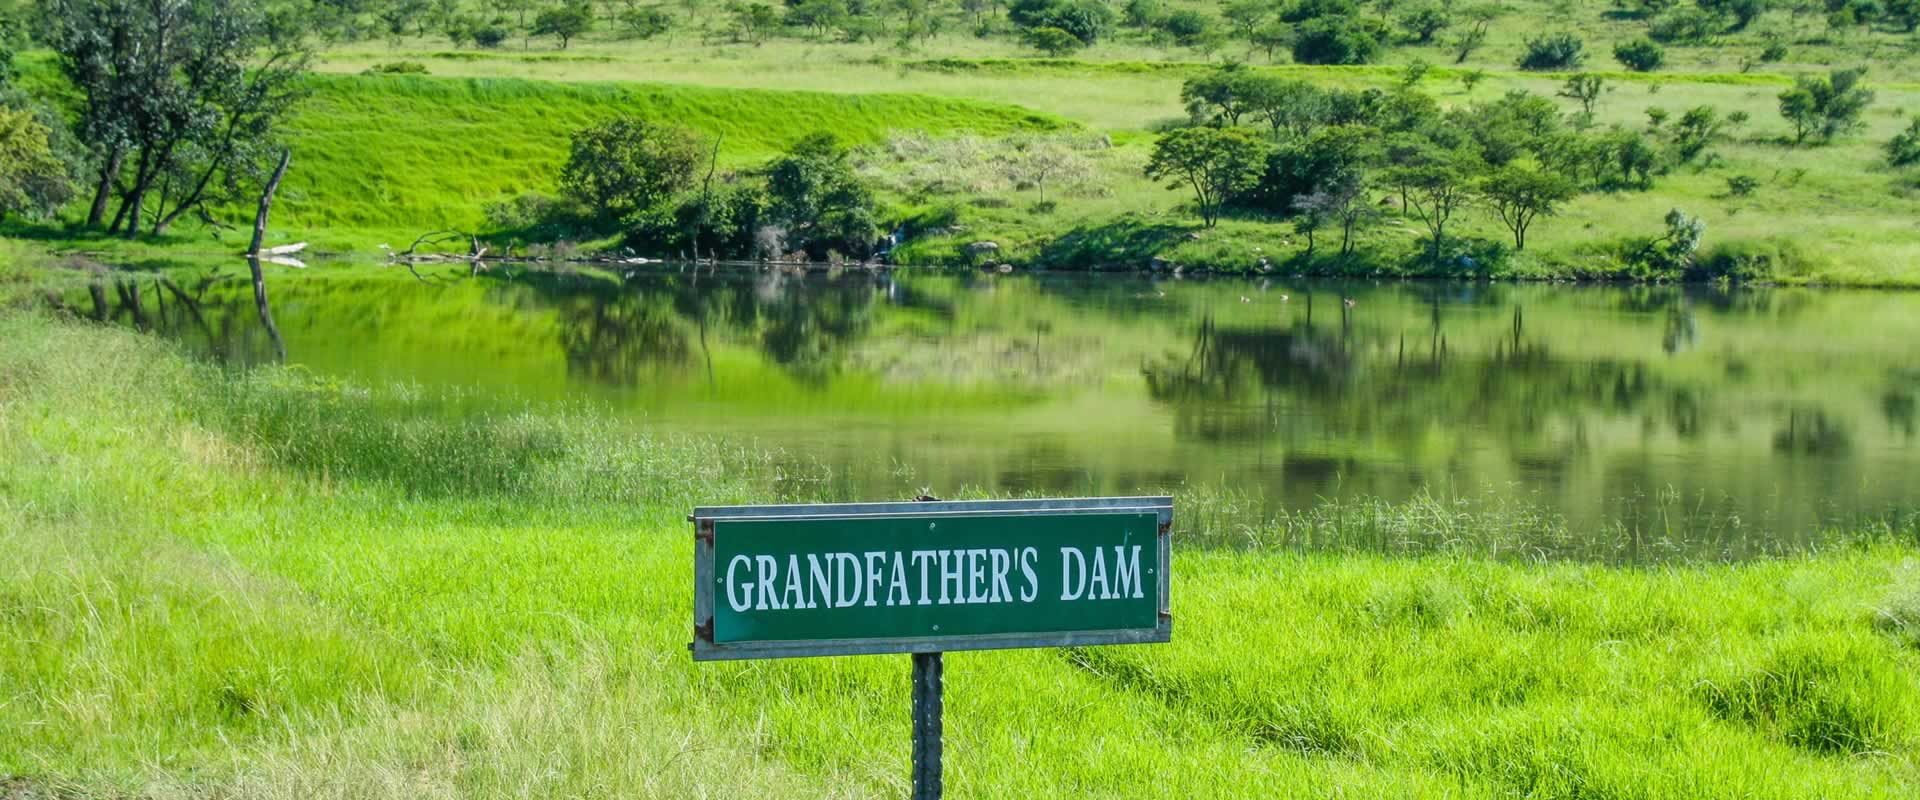 Grandfather's Dam